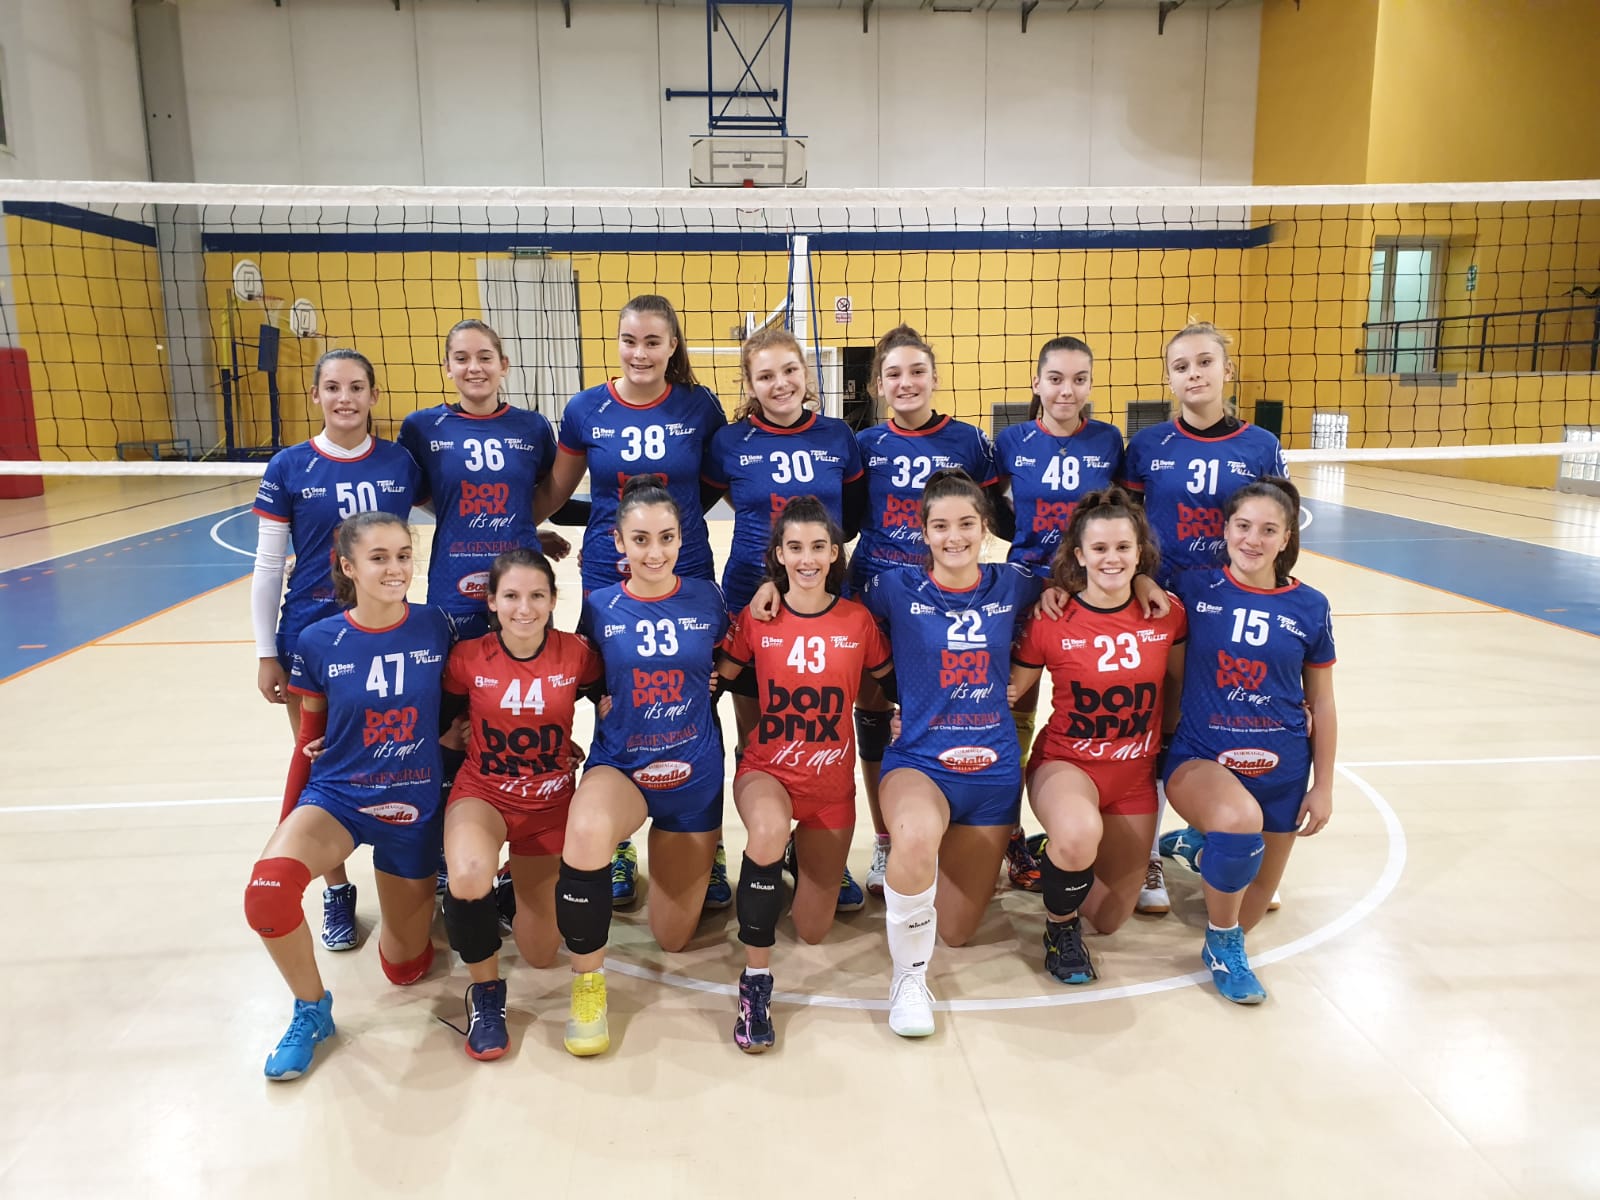 2.12.2019 – Bonprix U16 cede a Rivarolo contro l’Union Volley